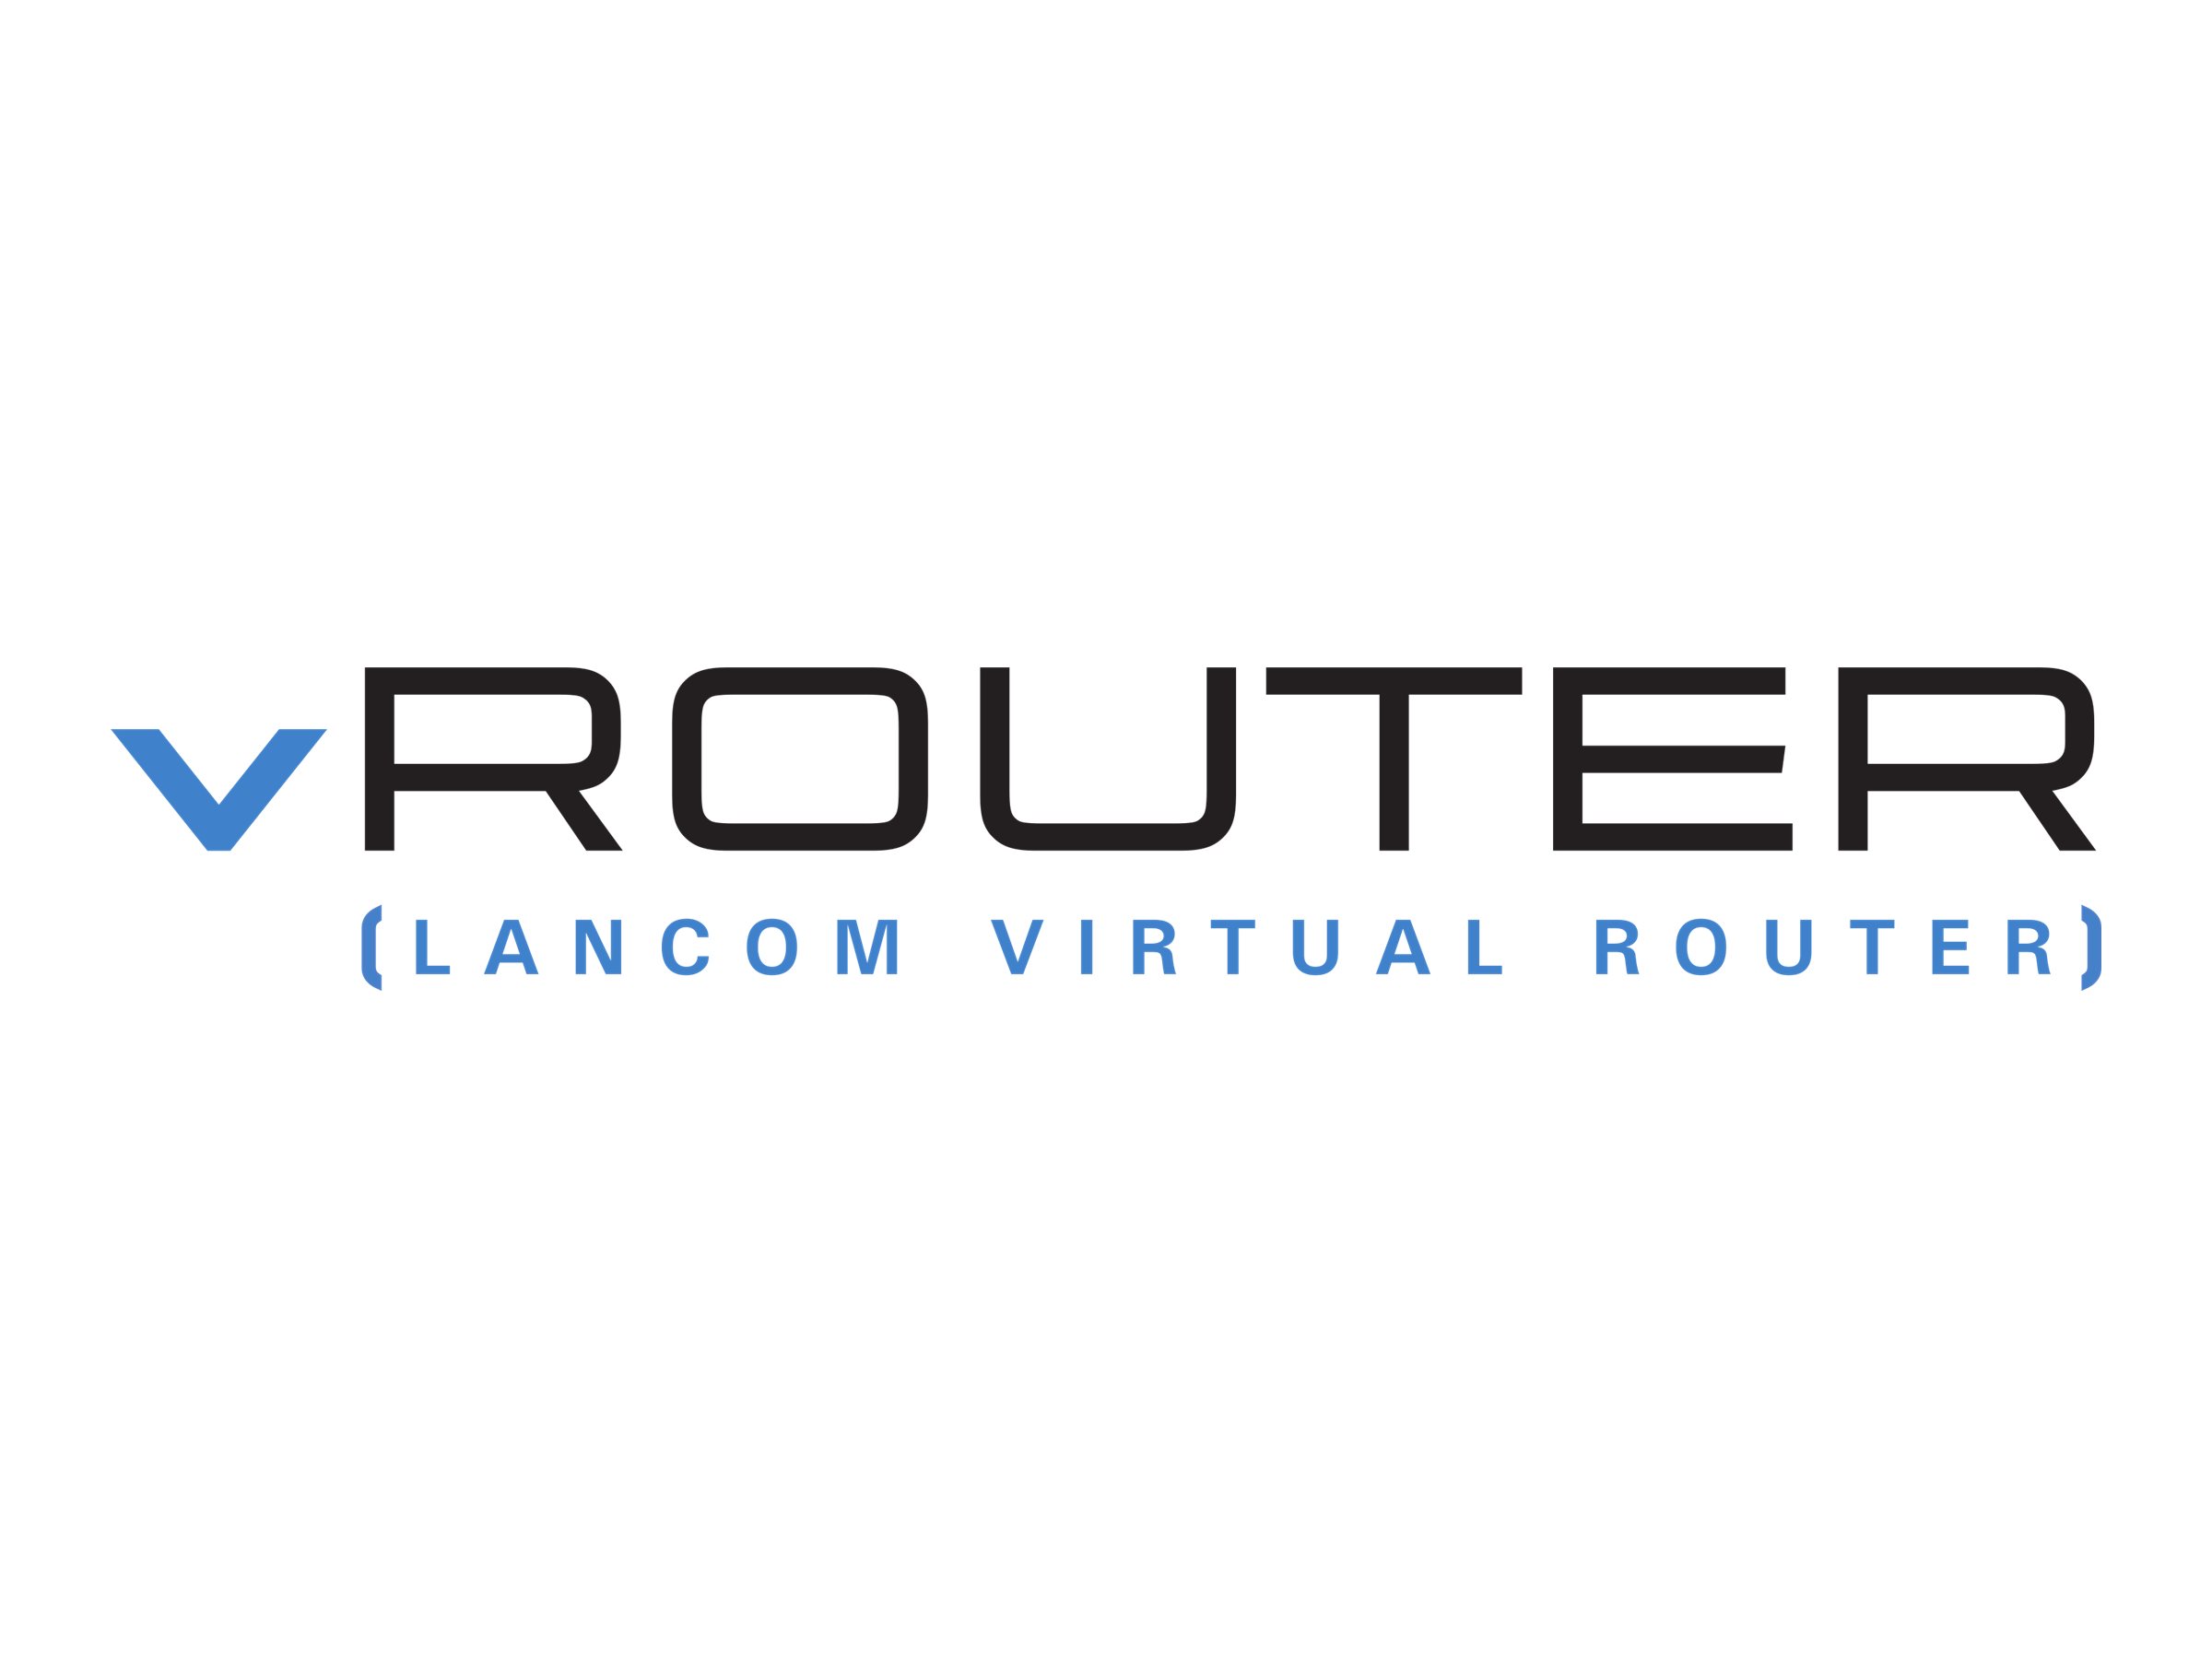 LANCOM vRouter for VMware ESXi - Abonnement-Lizenz (1 Jahr) - 1 Gbit/s Durchsatz, 128 ARF Netzwerke